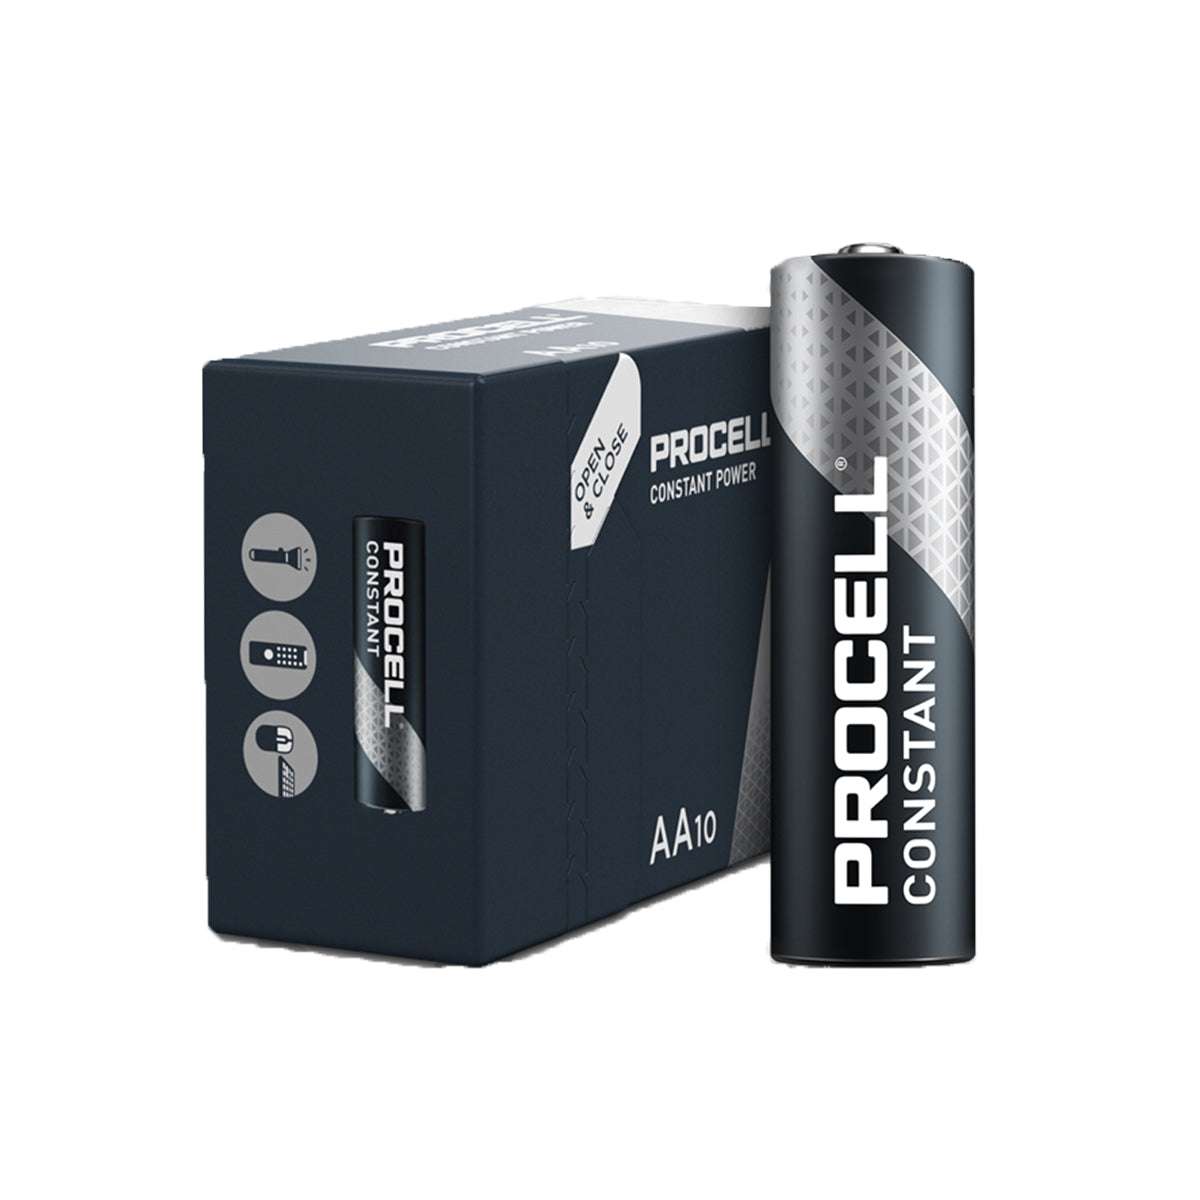 Batterie Alcaline professionali Constant Power AA 1.5V in pacco da 10 - Procell